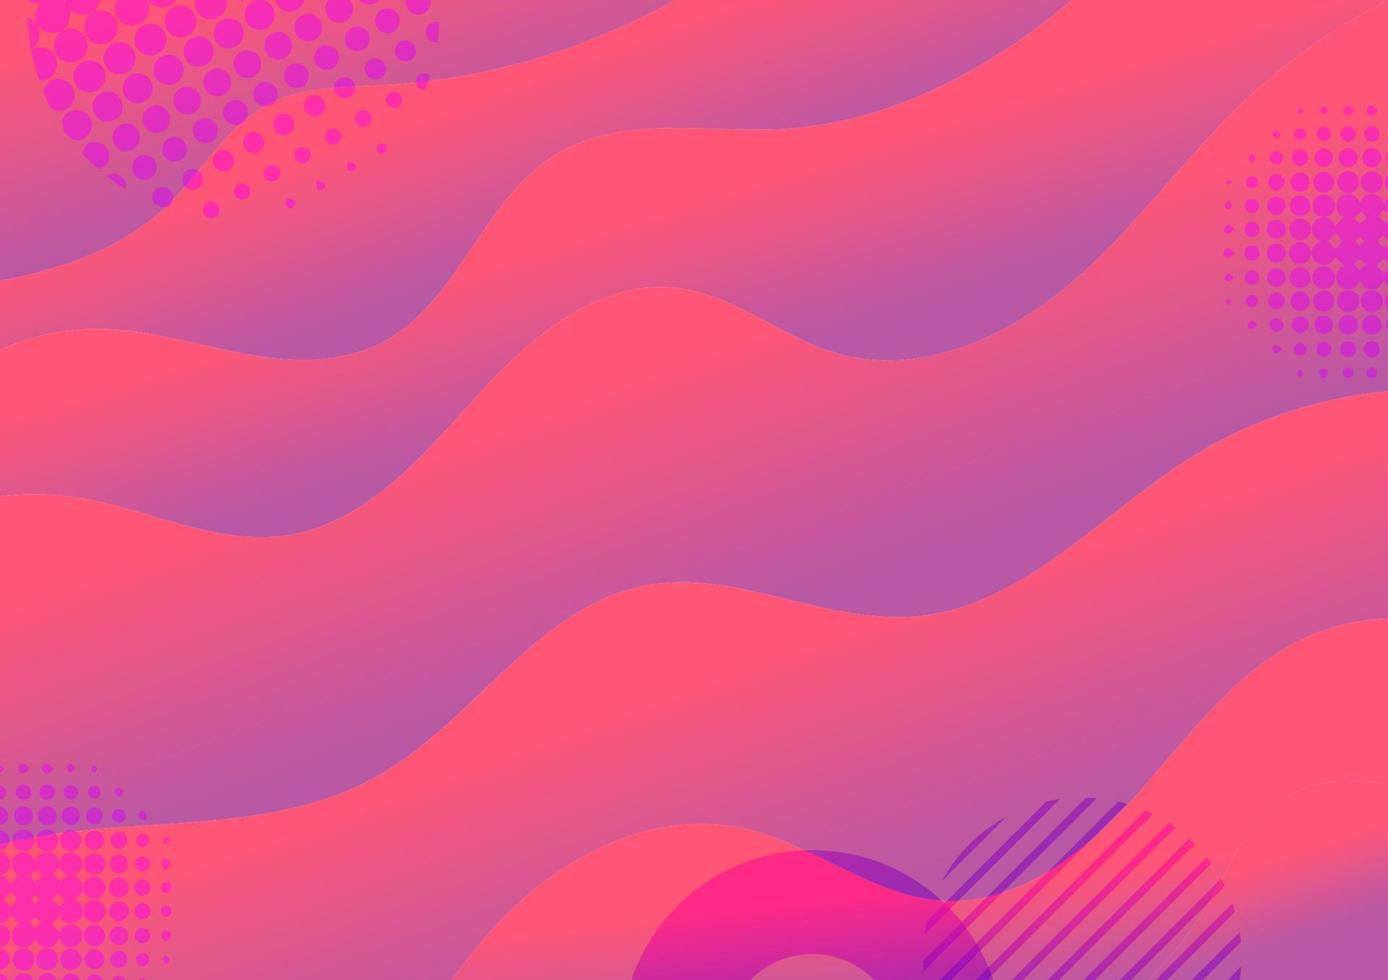 abstrakter Vektorhintergrund rotes und violettes Gradientenwellenkurvenmusterdesign für Cover, Web, Poster, Banner. vektor